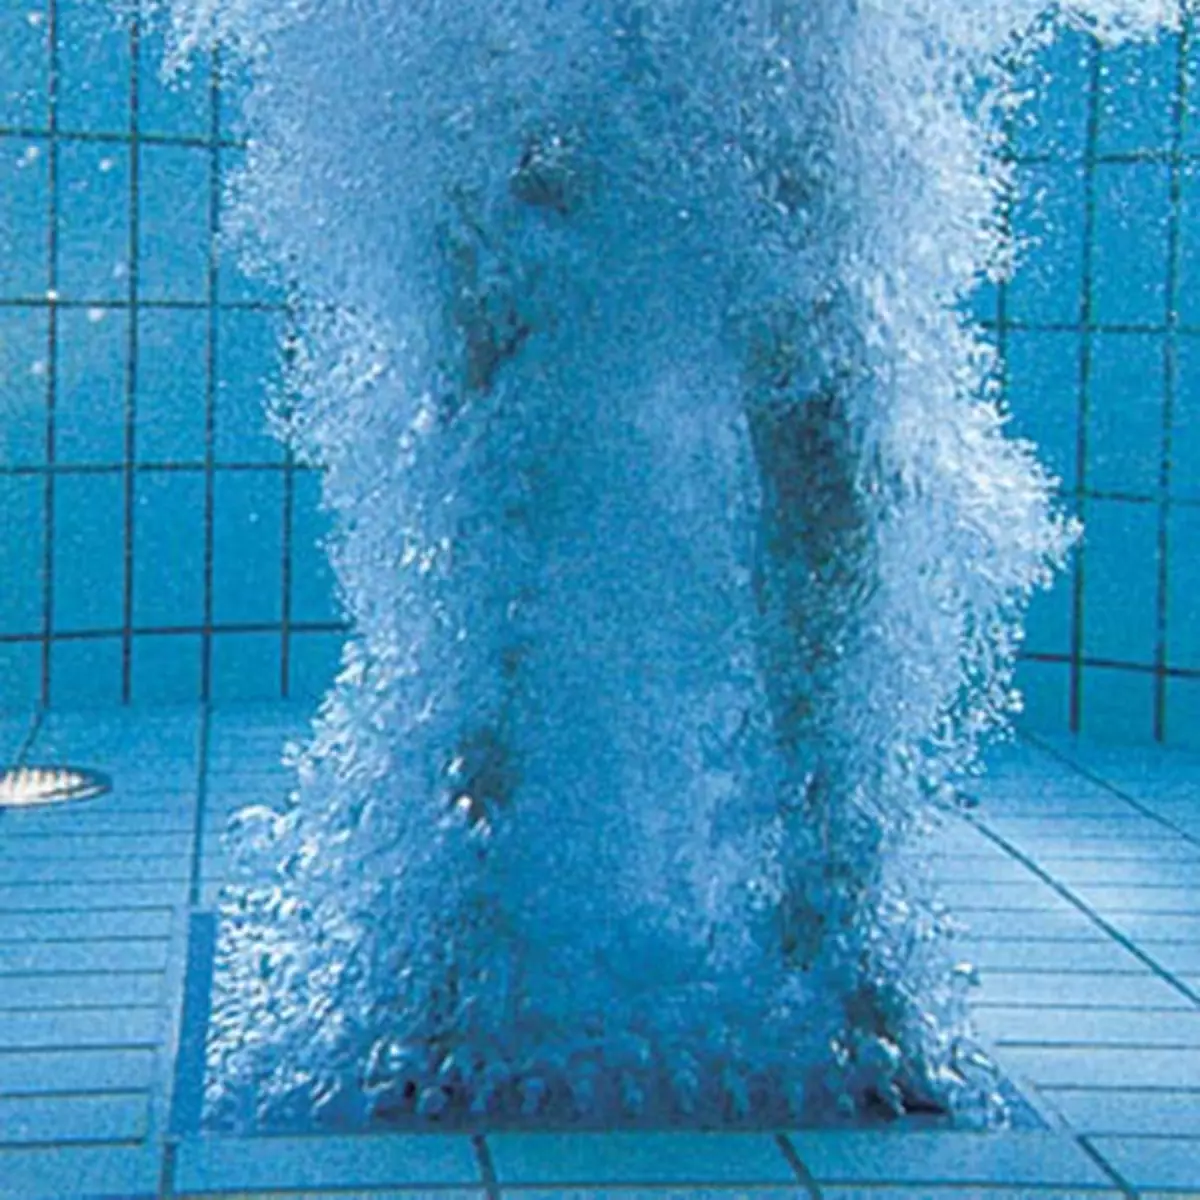 Kúpeľný hydromasážny bazén - maximálny prínos a relax!